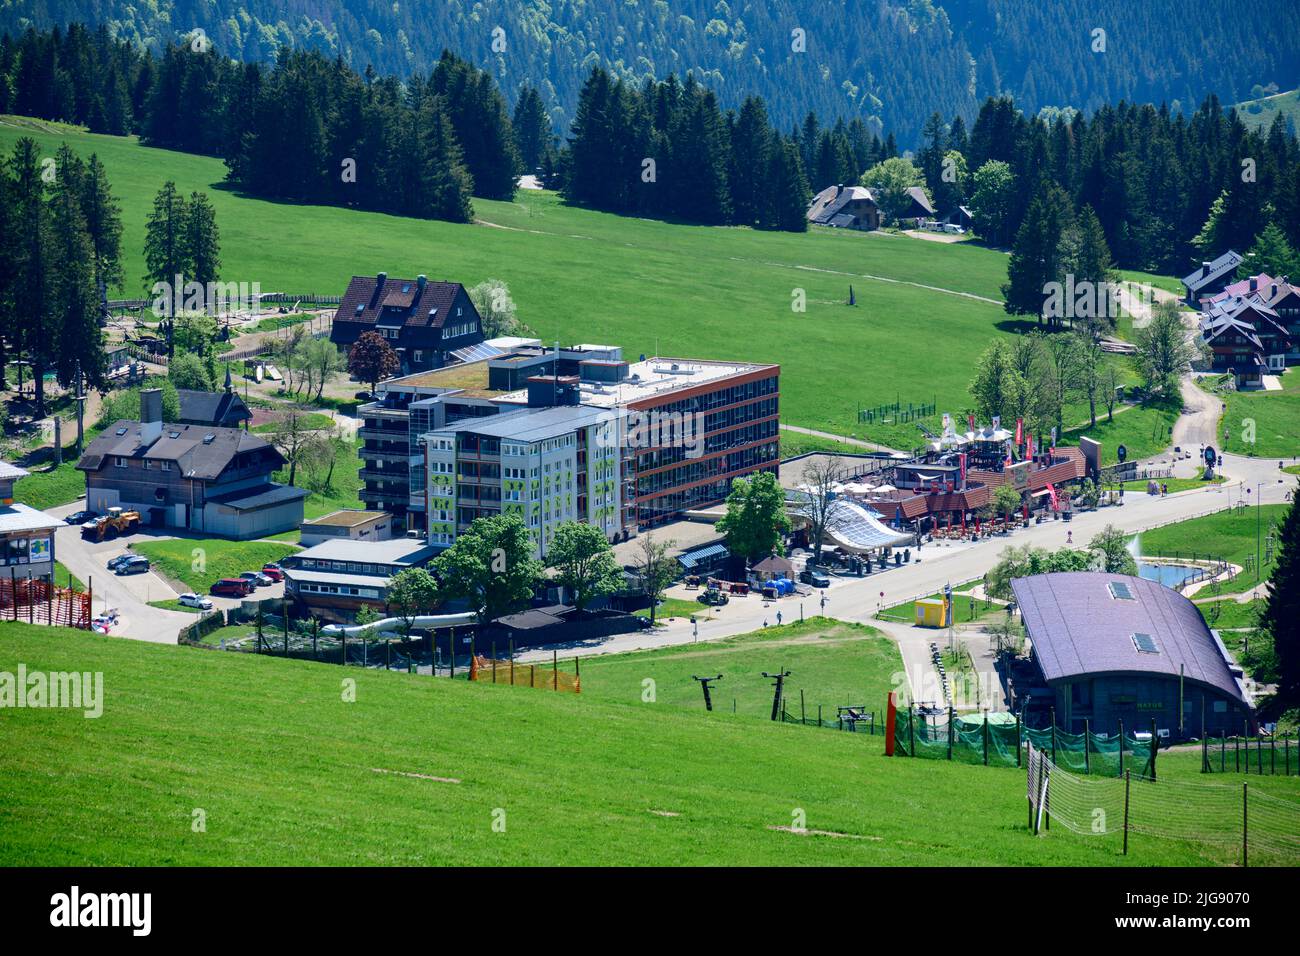 Germany, Baden-Wuerttemberg, Black Forest, Feldberg, view of the hotel Feldberger Hof. Stock Photo